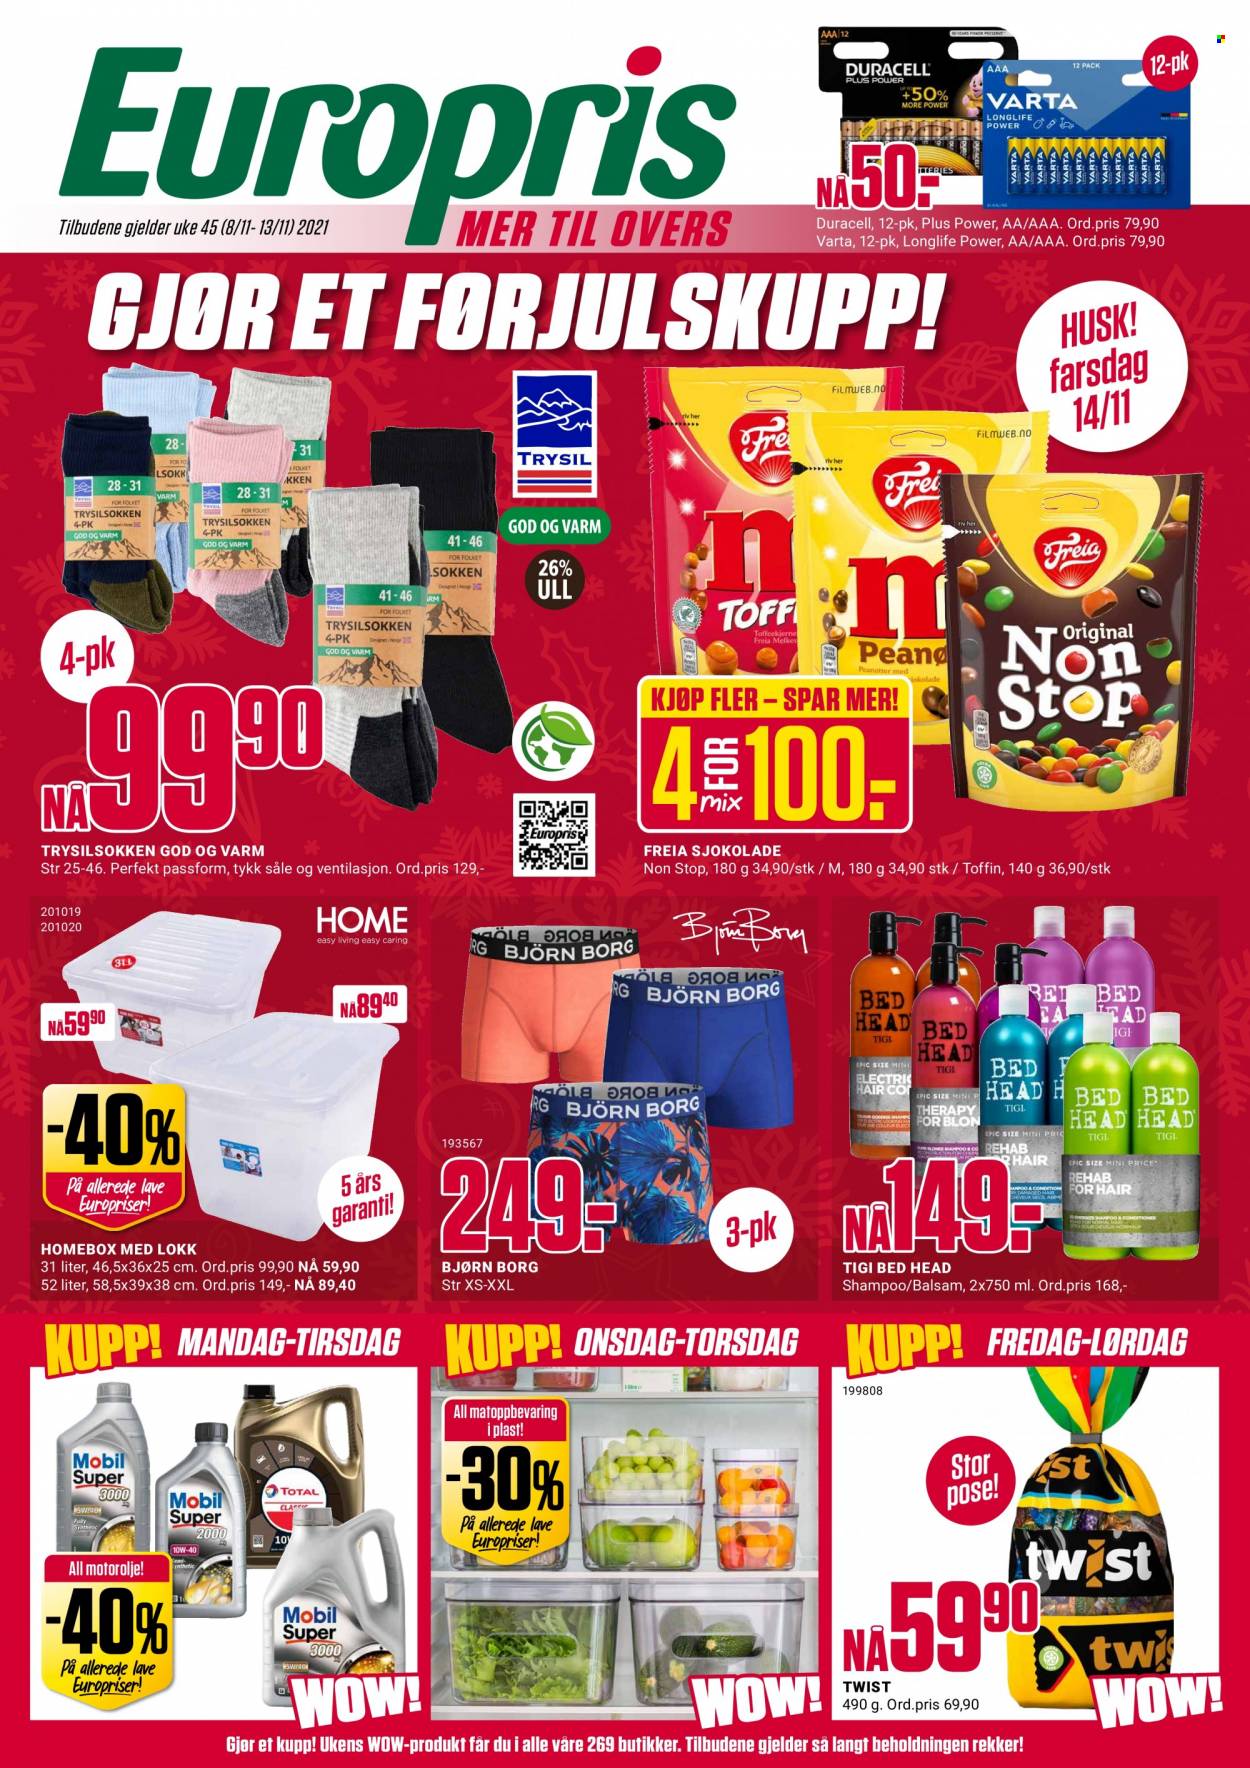 thumbnail - Kundeavis Europris - 8.11.2021 - 13.11.2021 - Produkter fra tilbudsaviser - sjokolade, Freia, shampoo. Side 1.